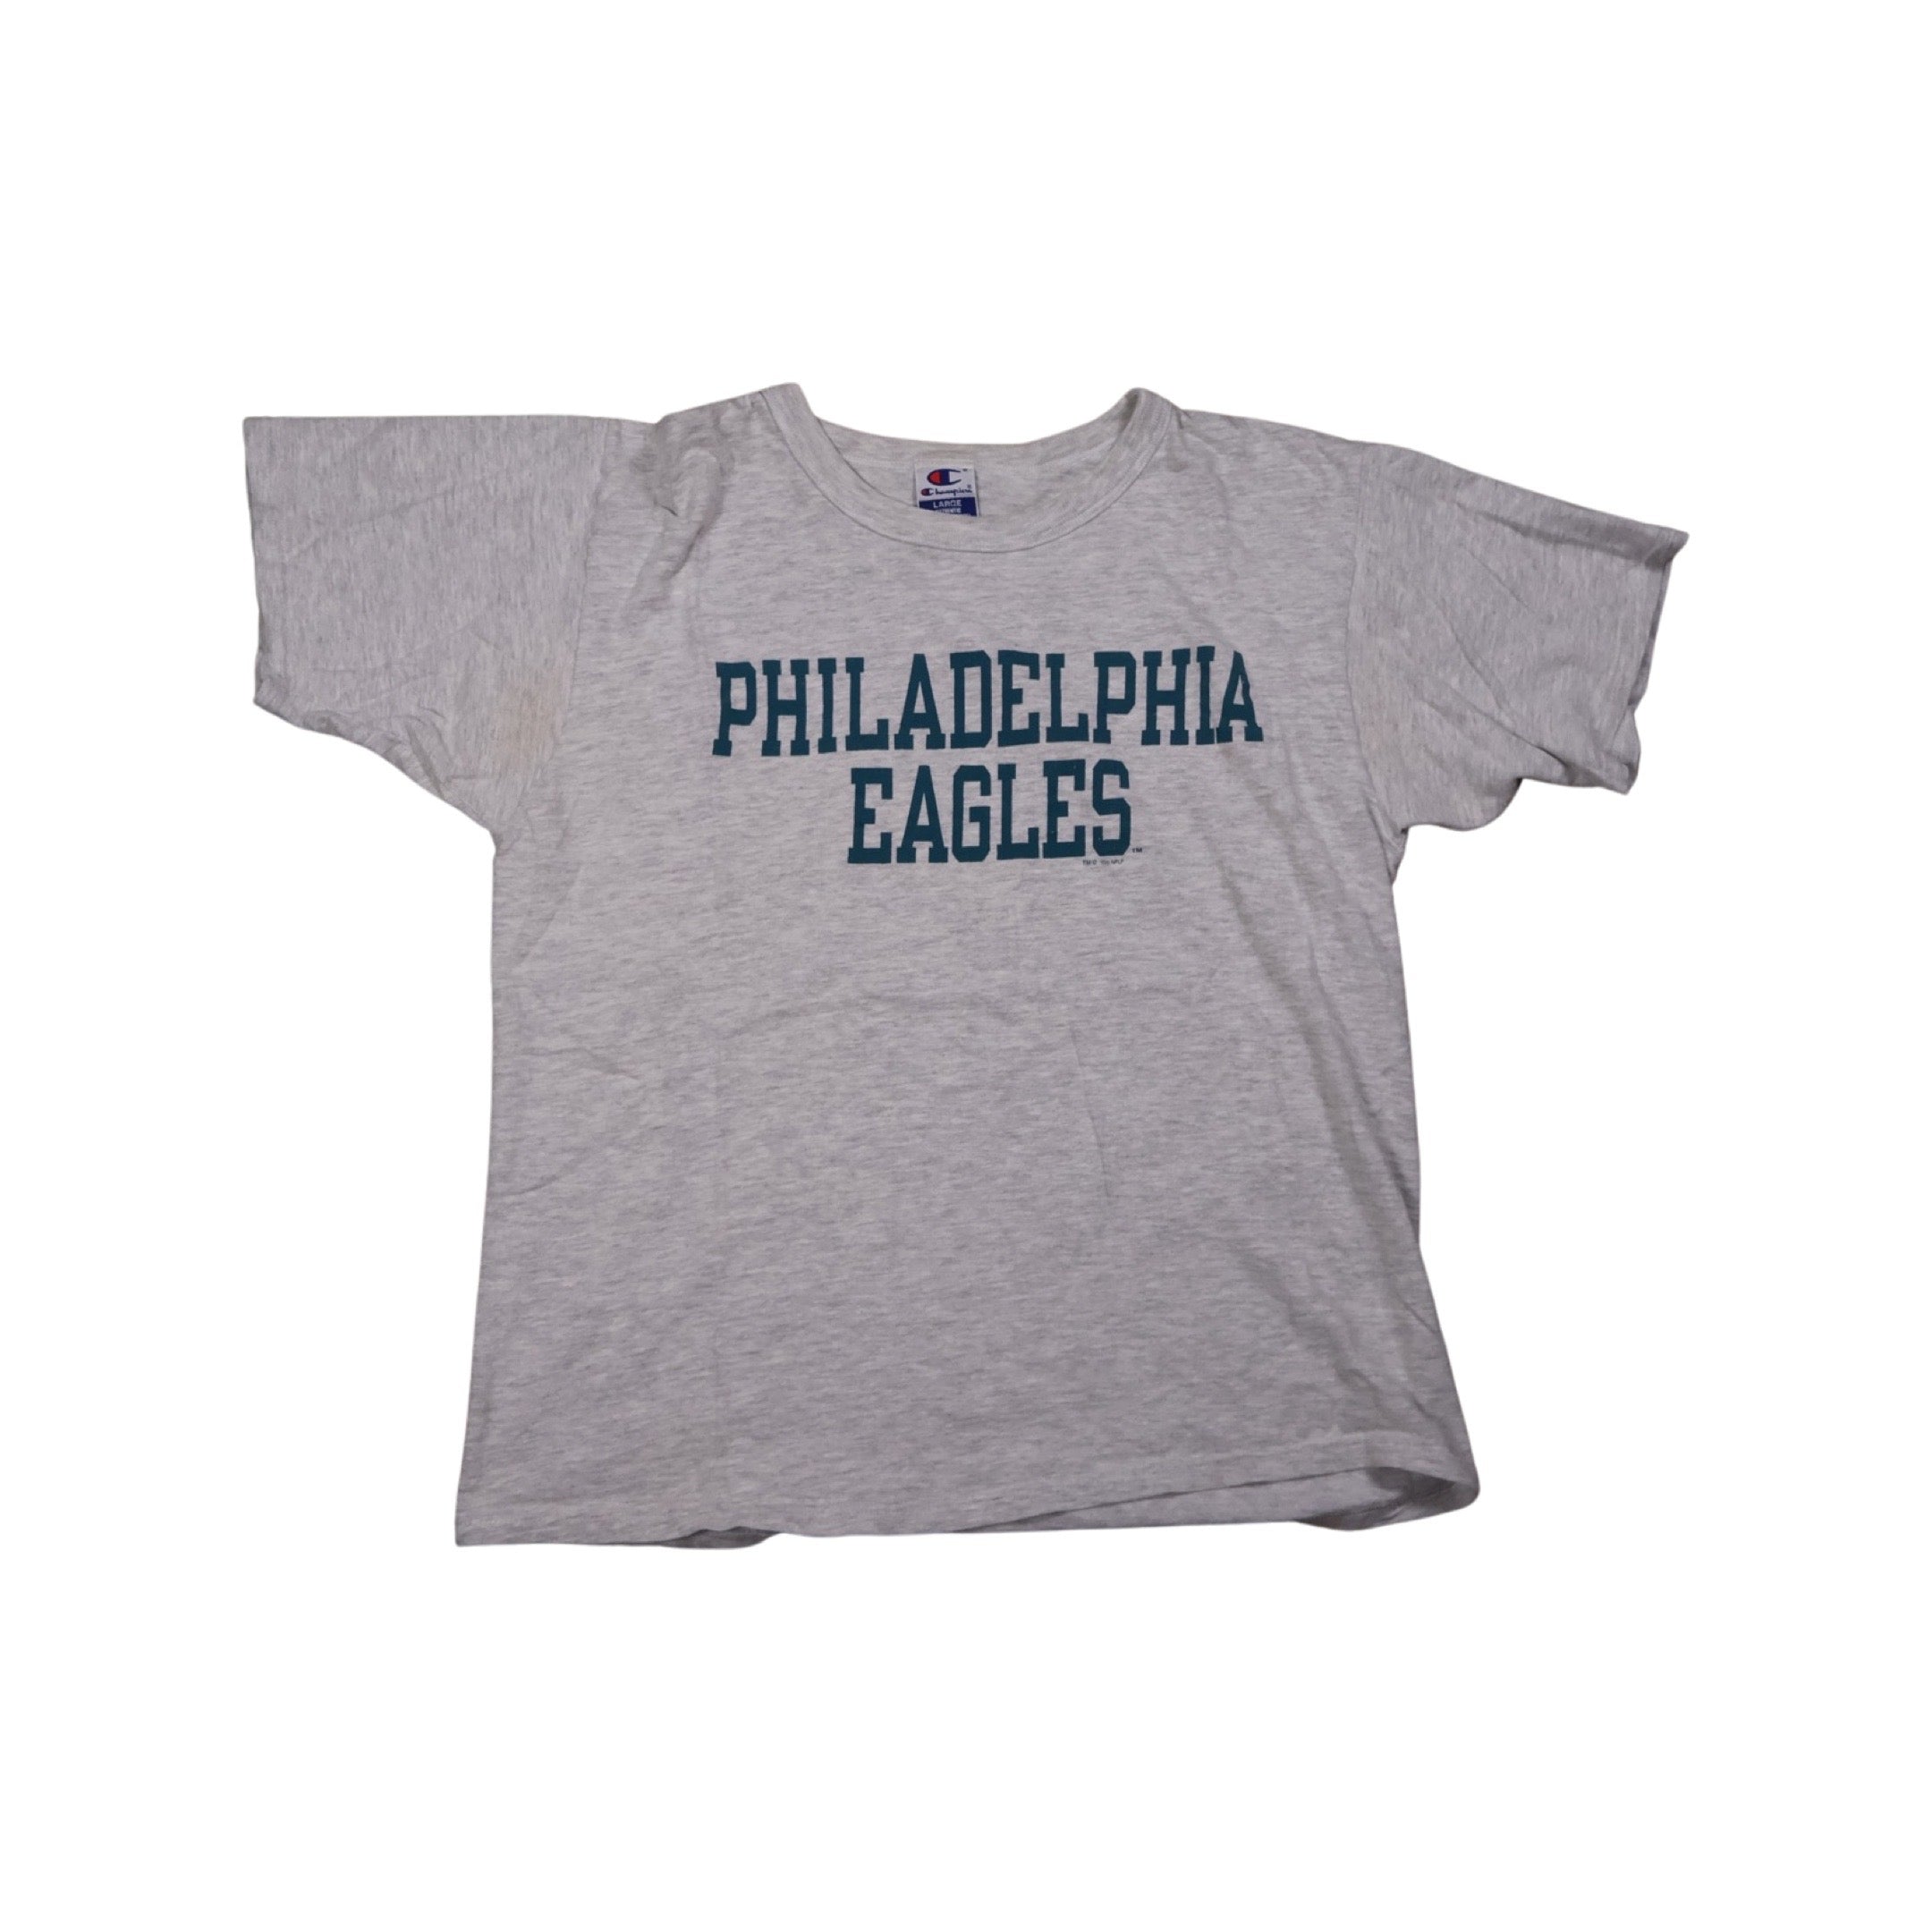 Philadelphia Eagles 1996 T-Shirt (Large)